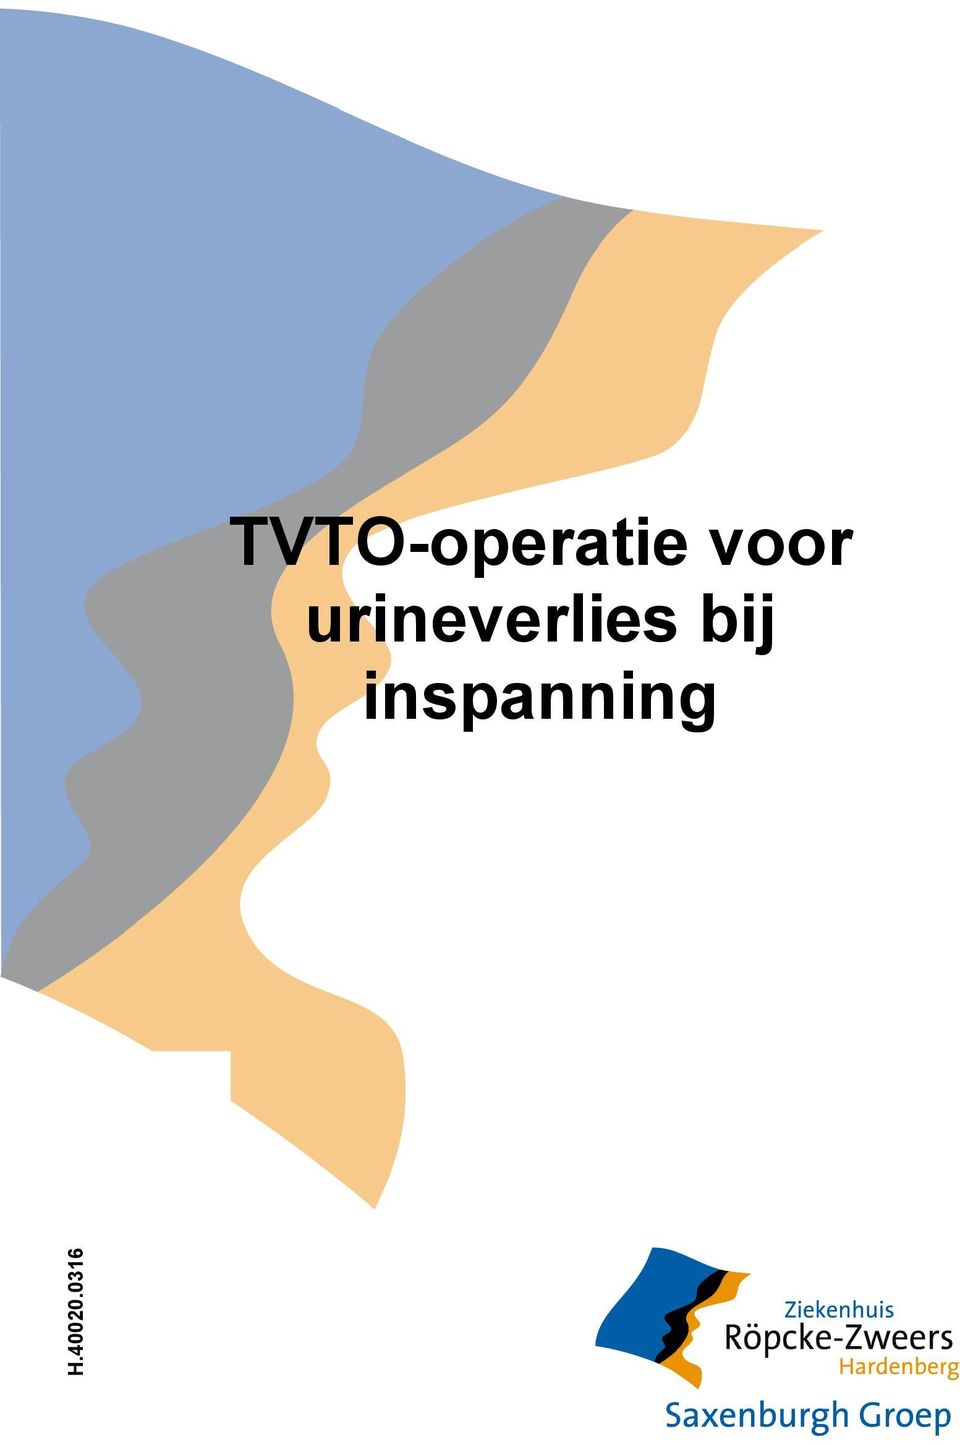 TVTO-operatie